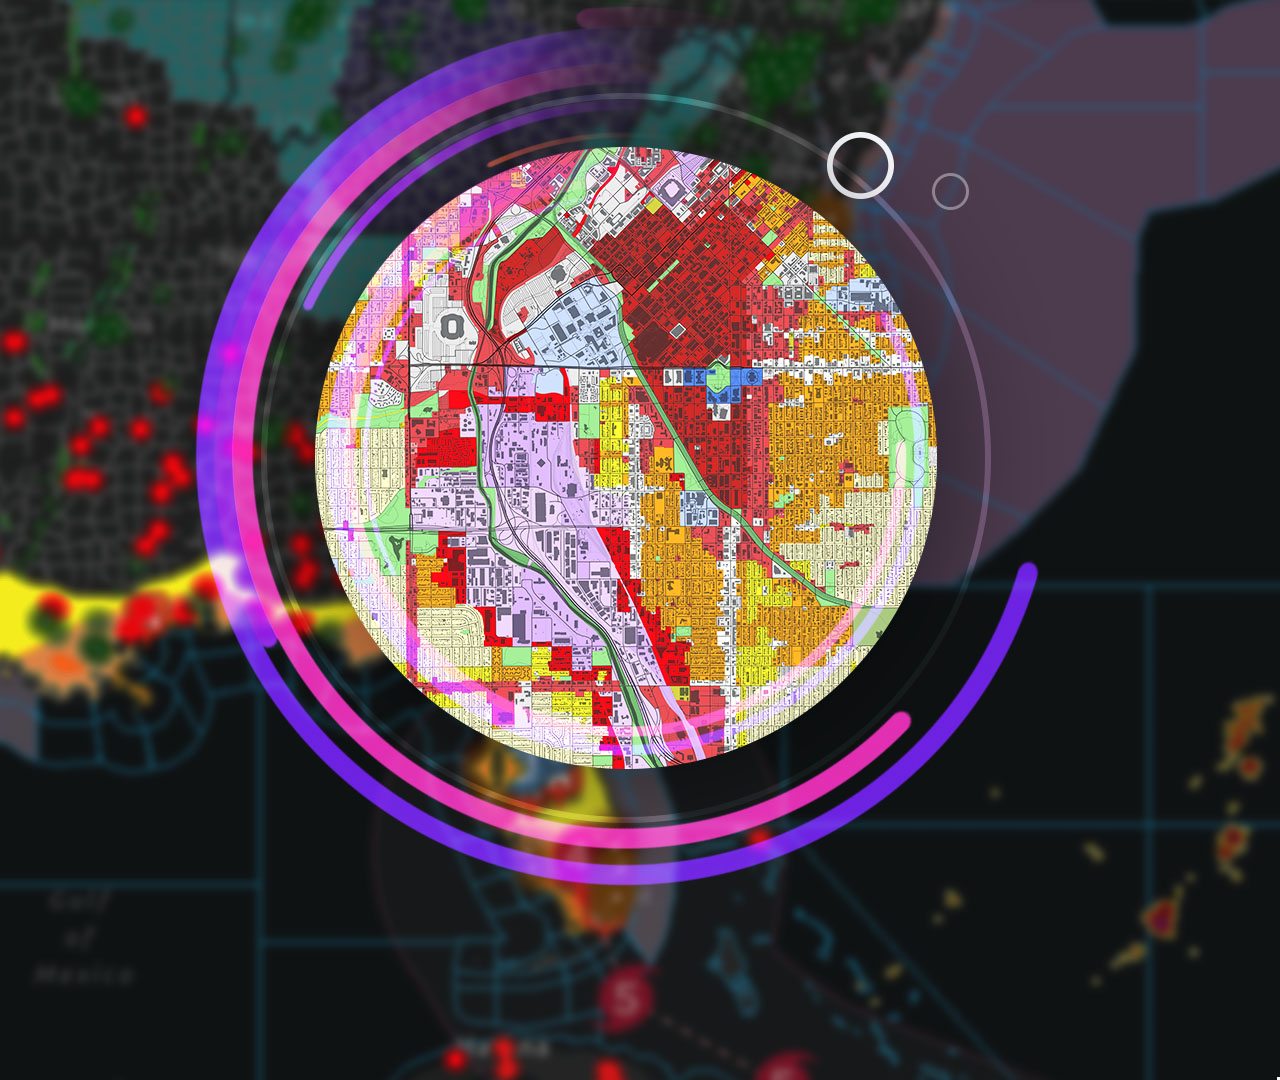 计算机图像，显示城市高层建筑物图像围绕的空间数据地图。